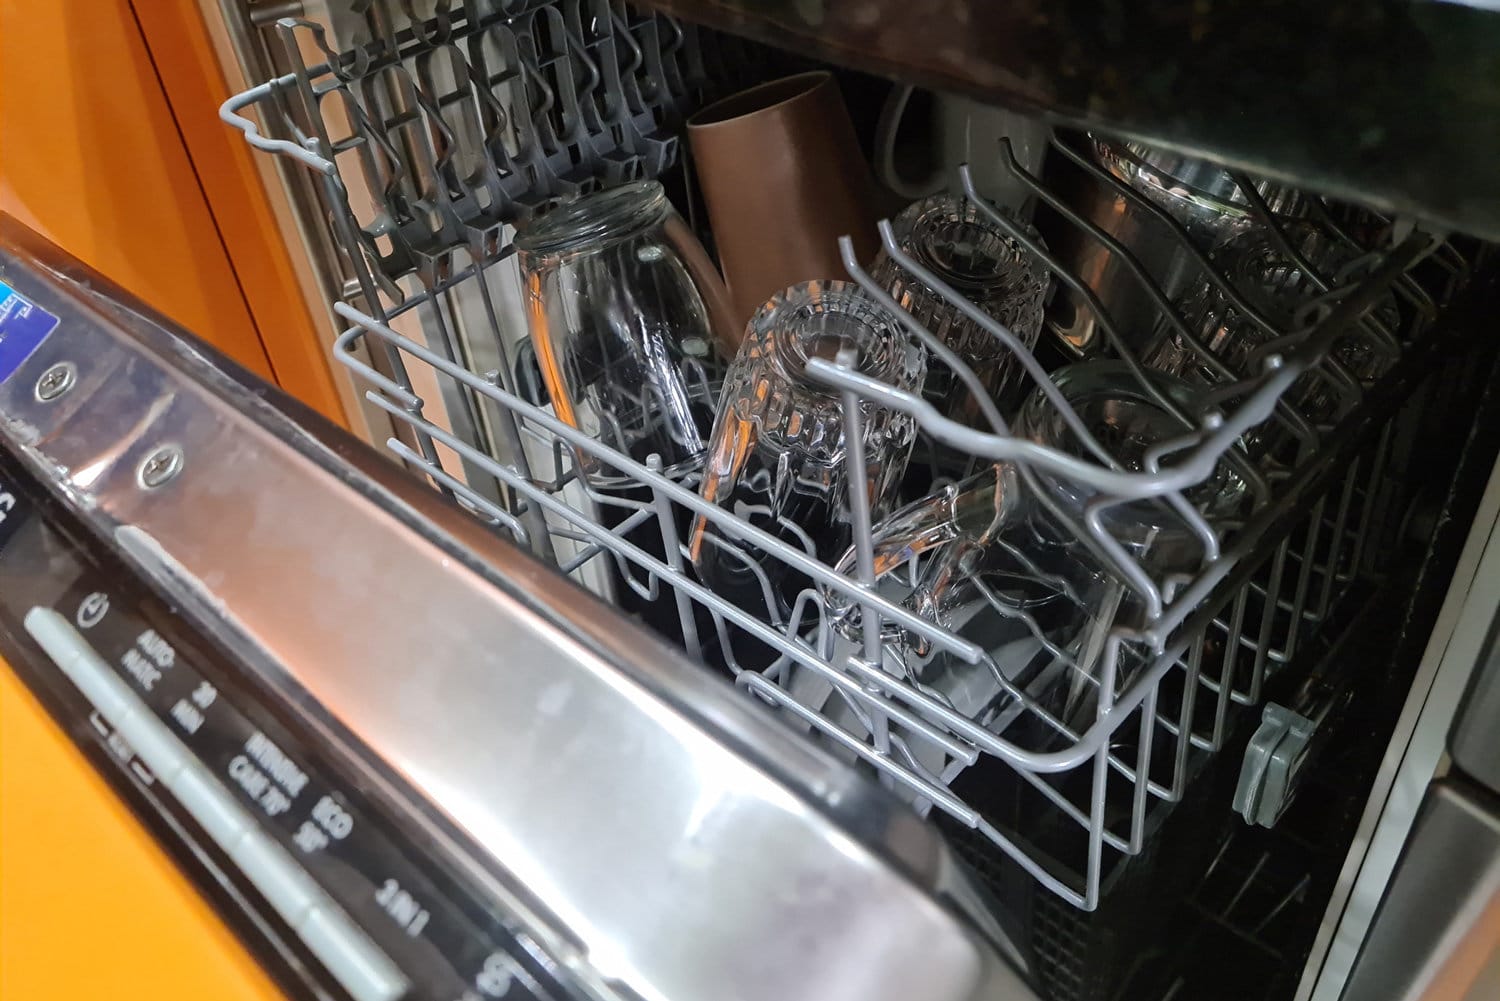 丢失了带有干净玻璃杯和盘子的开放式洗碗机。洗碗和家用电器的概念